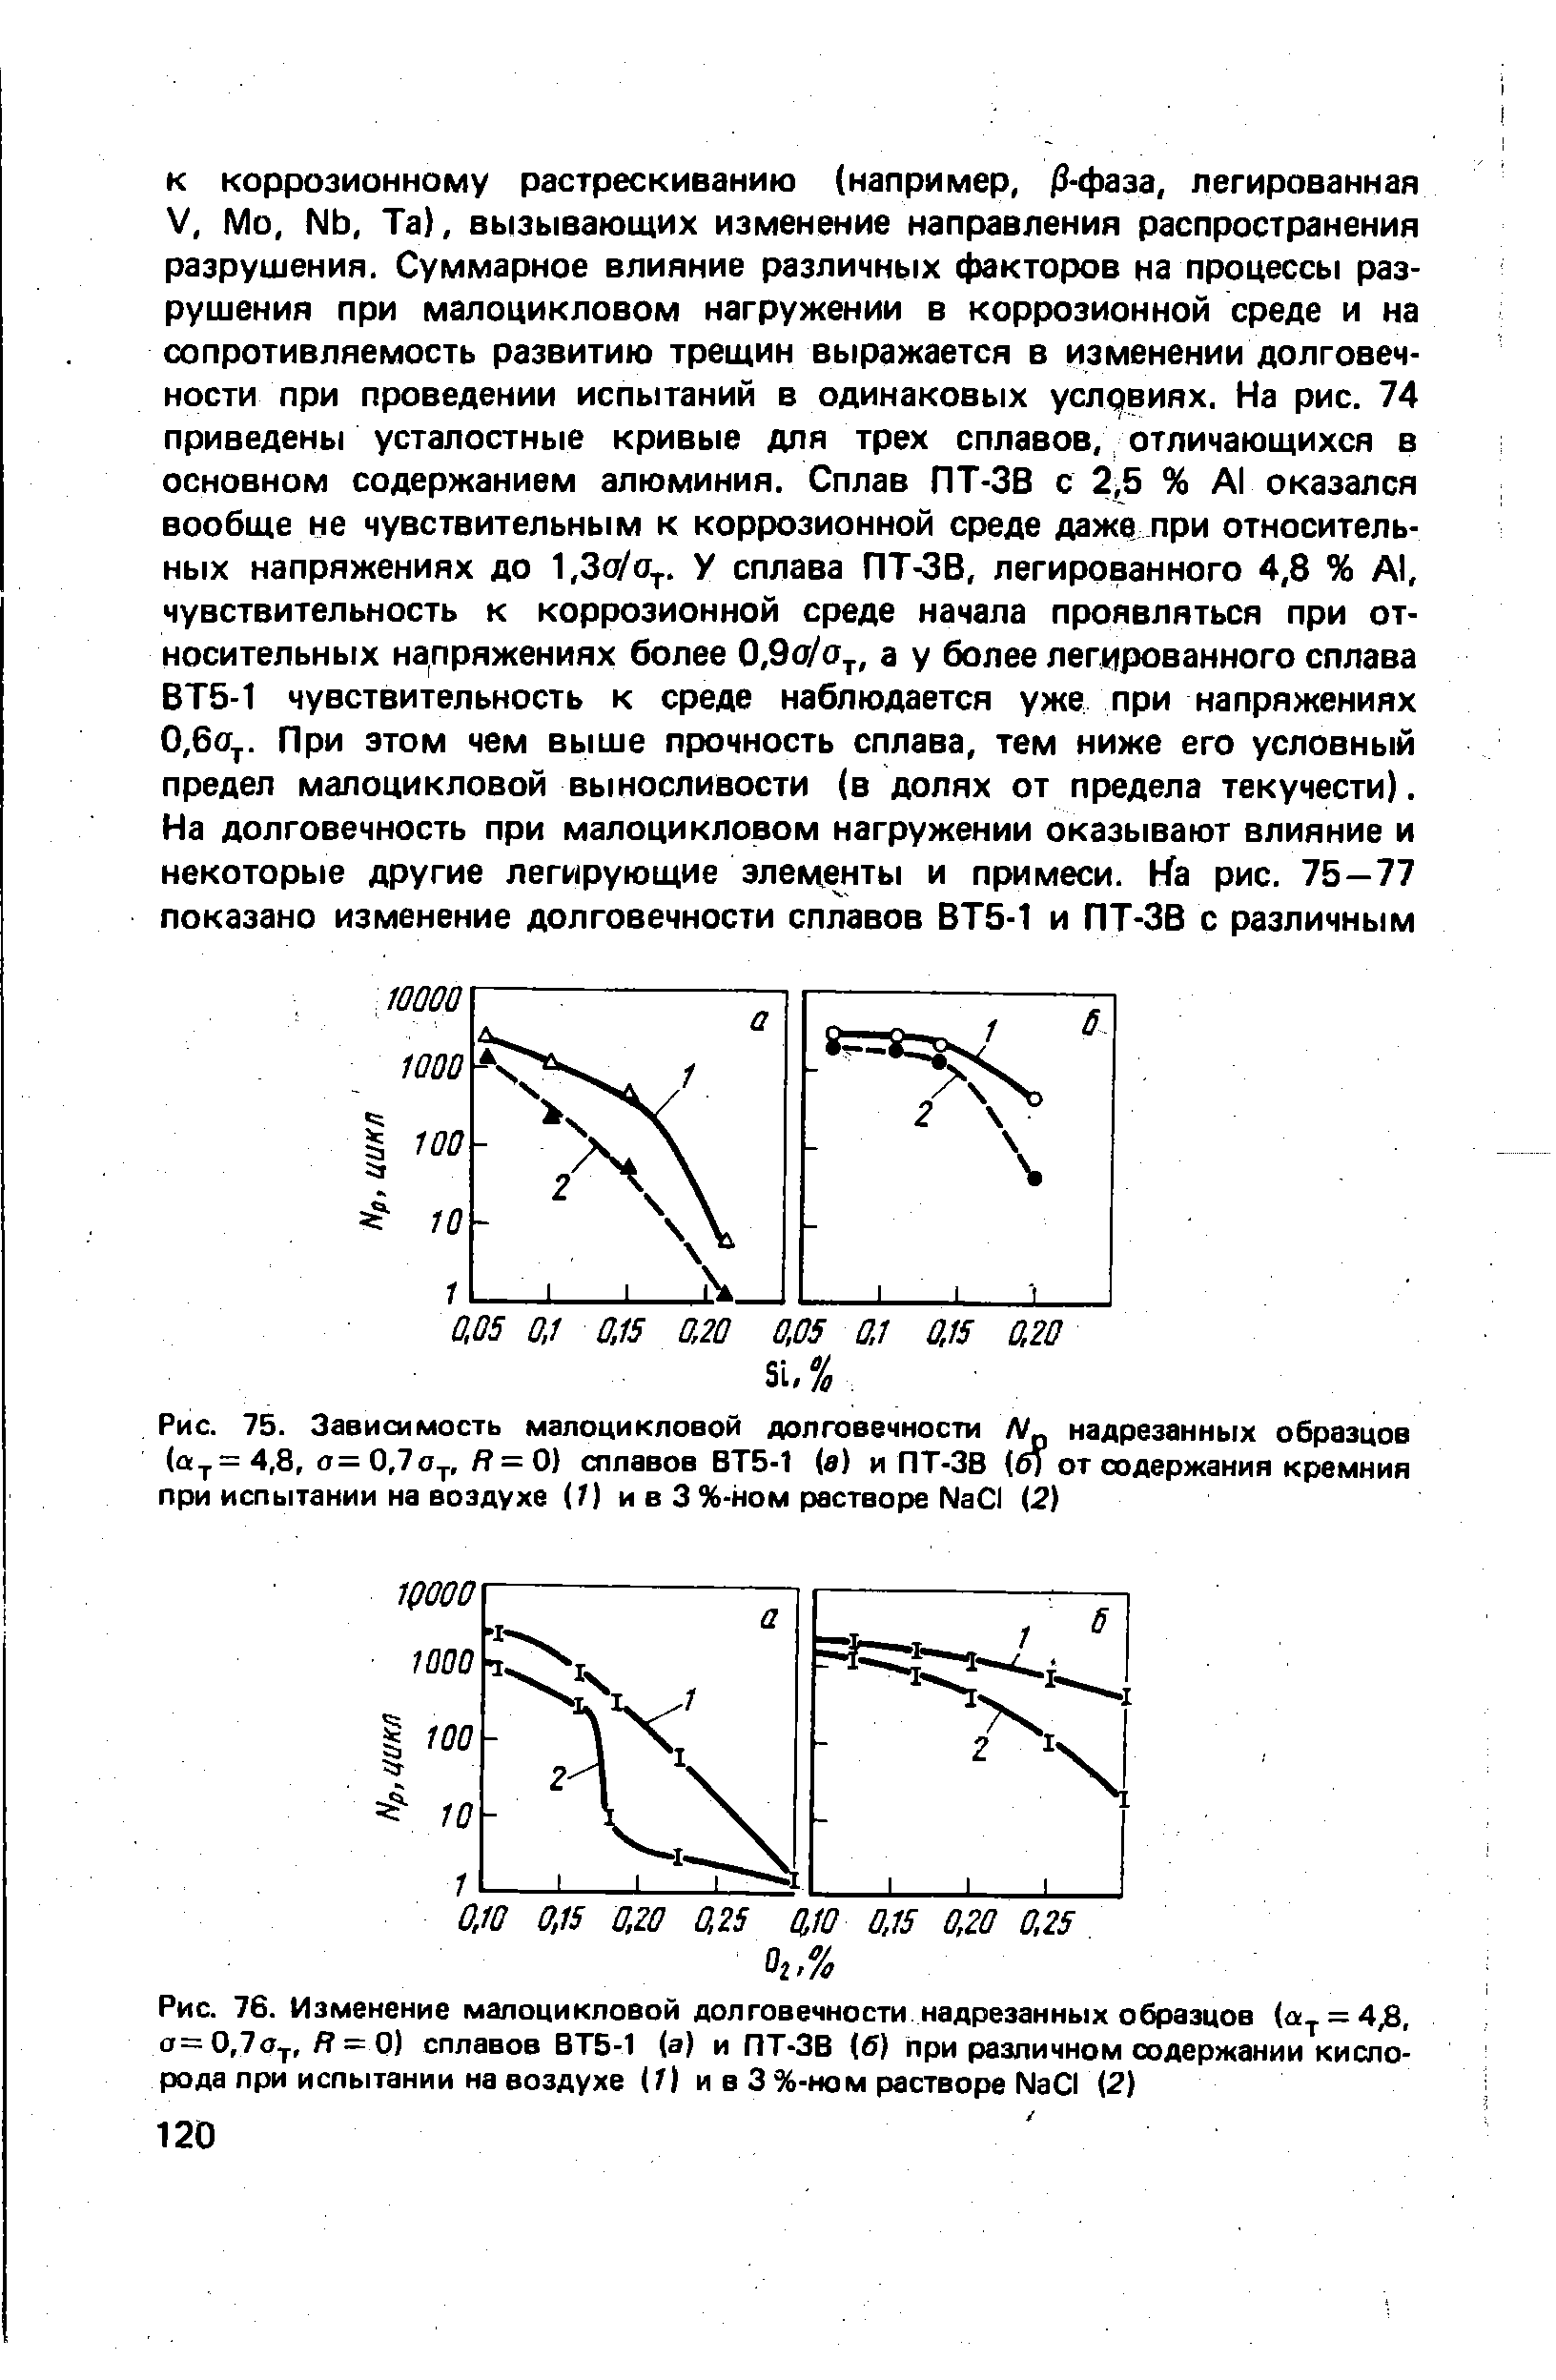 Рис. 75. Зависимость малоцикловой долговечности N надрезанных образцов (а У =4,8, о=0,7оу, Я = 0) сплавов ВТ5-1 (а) и ПТ-ЗВ (б) от содержания кремния при испытании на воздухе (1) и в 3 %-ном растворе N301 (2)
